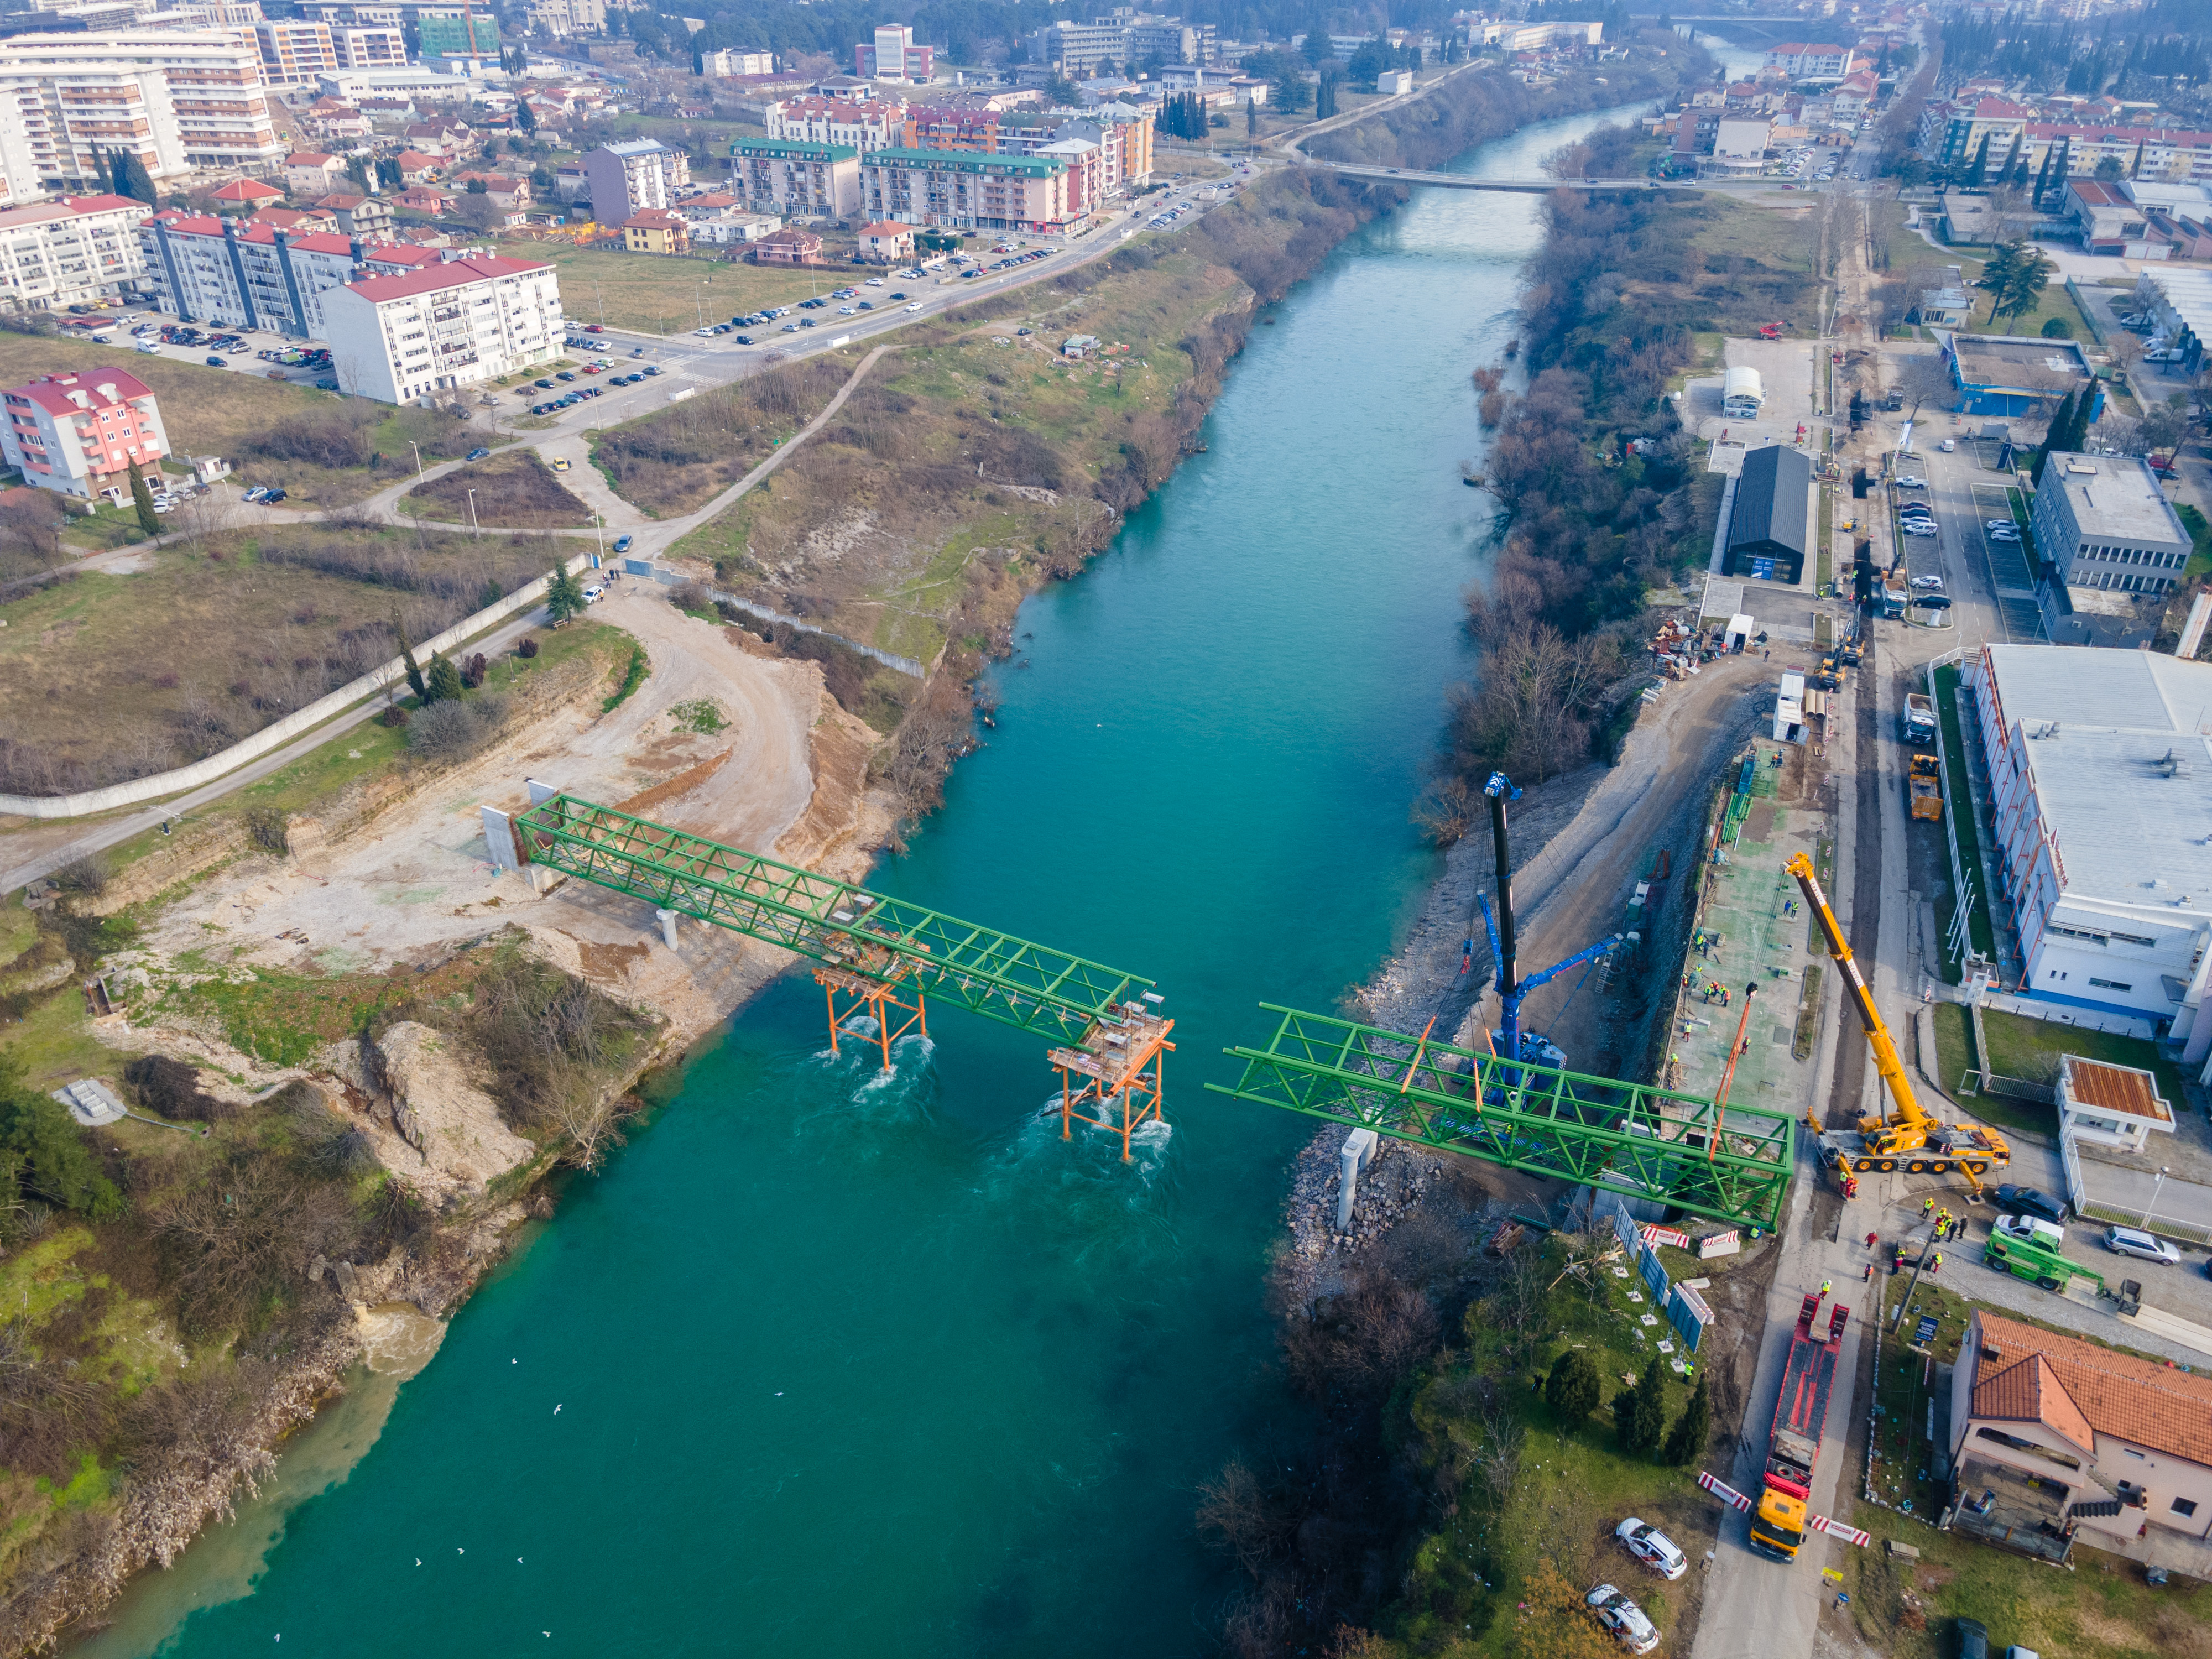 Postavljen treći segment konstrukcije mosta: Podgorica uskoro dobija i novi pješački most